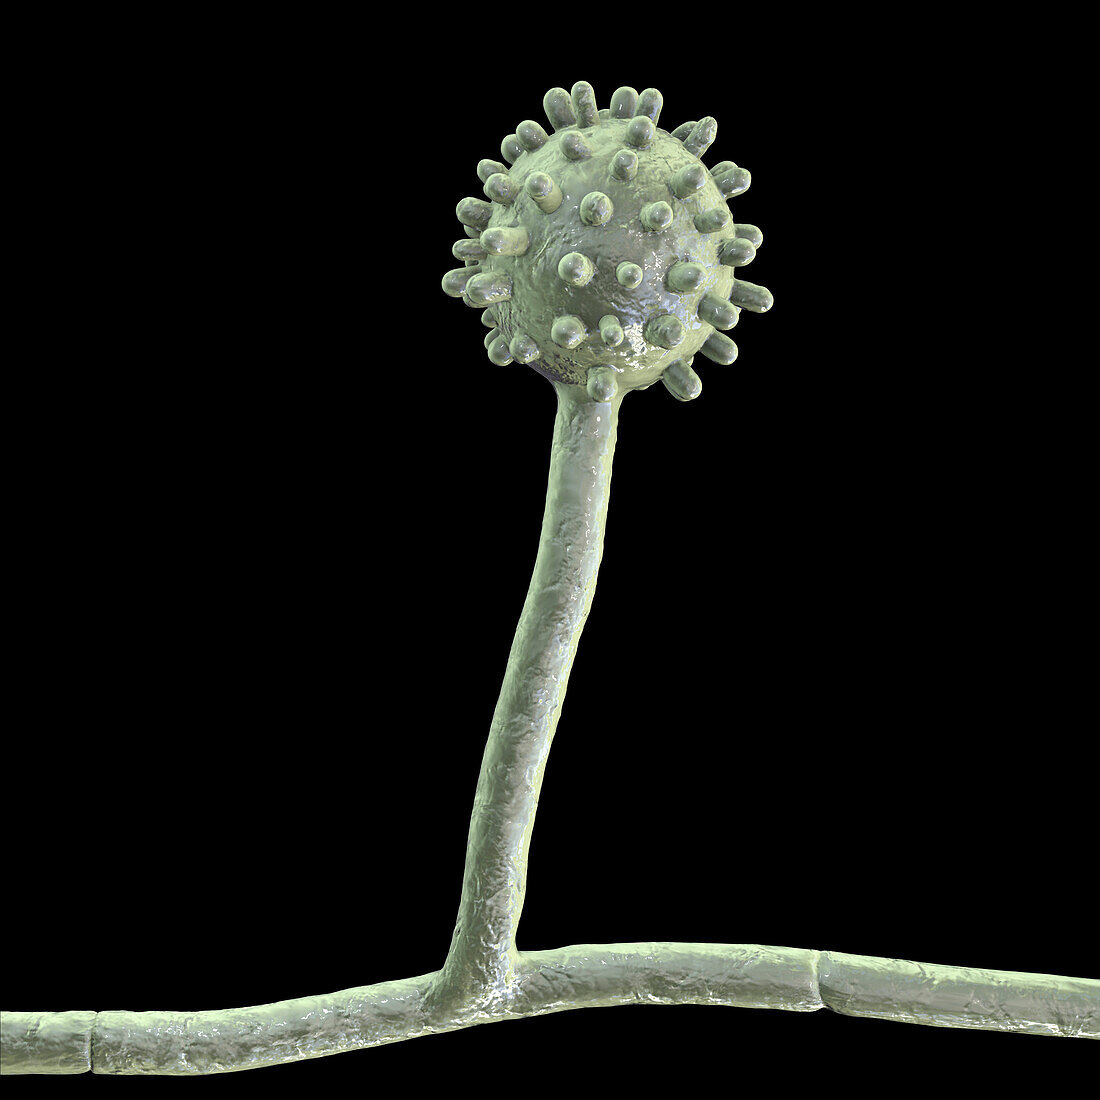 Histoplasma capsulatum fungus, illustration